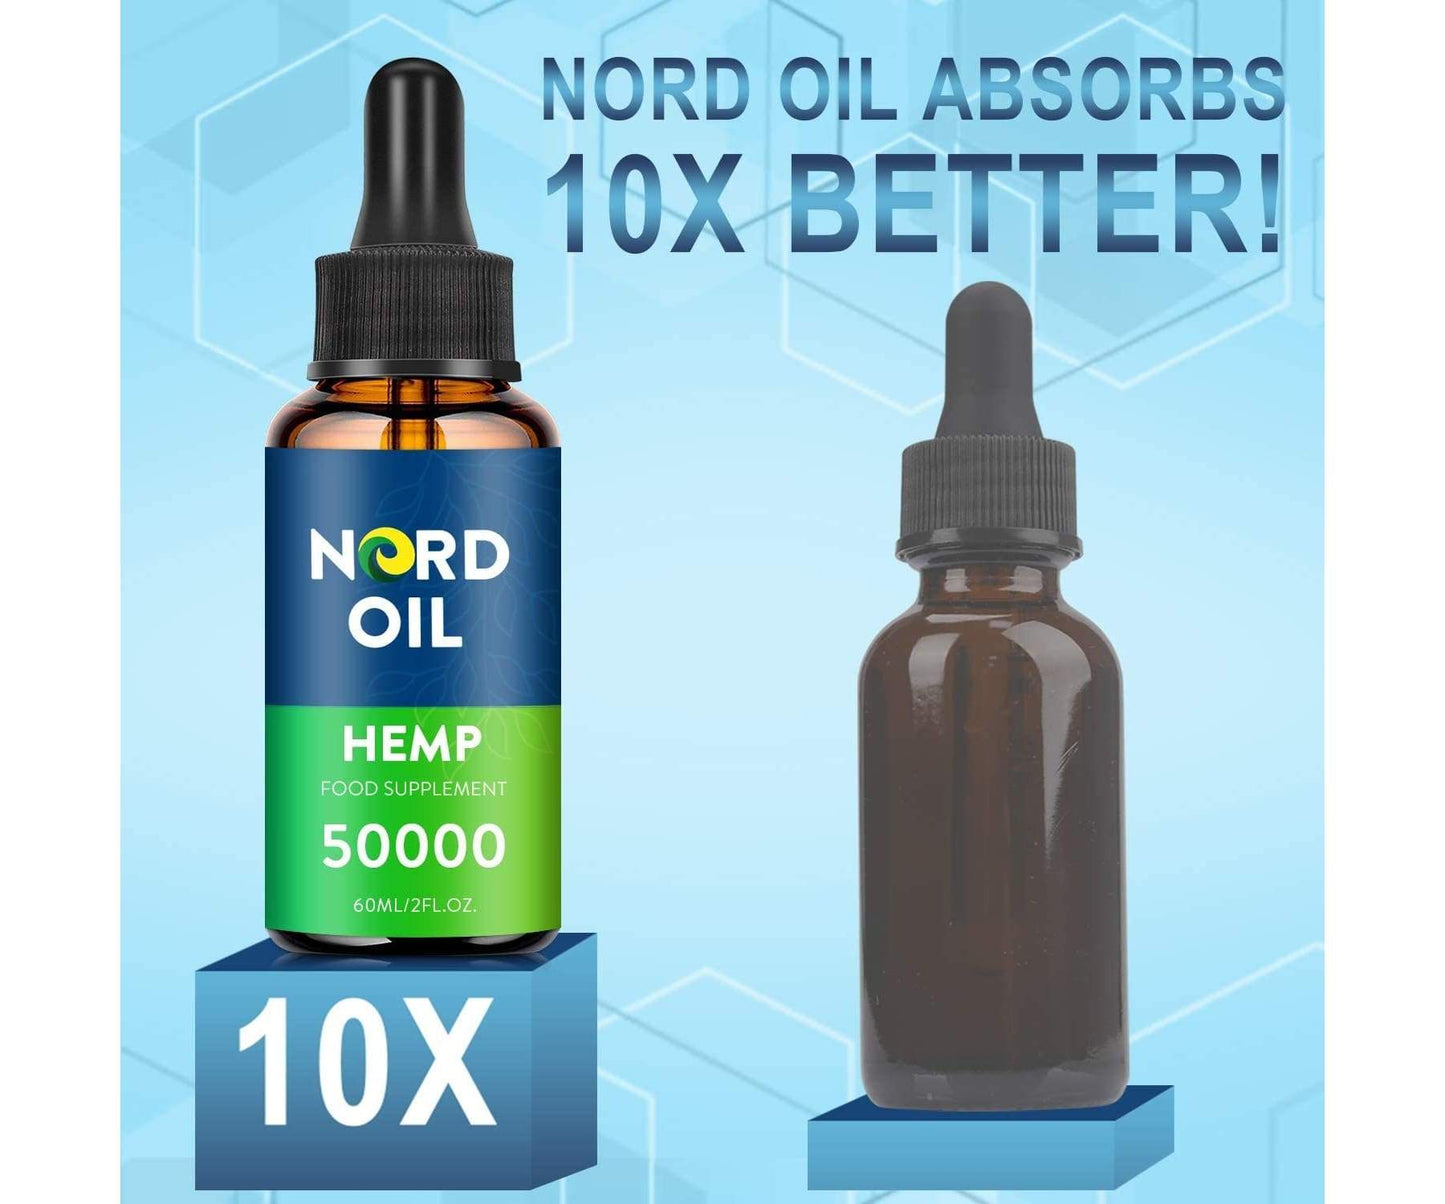 NORD OIL - Nord Oil Premium Hanföl à 50.000mg - 60ml